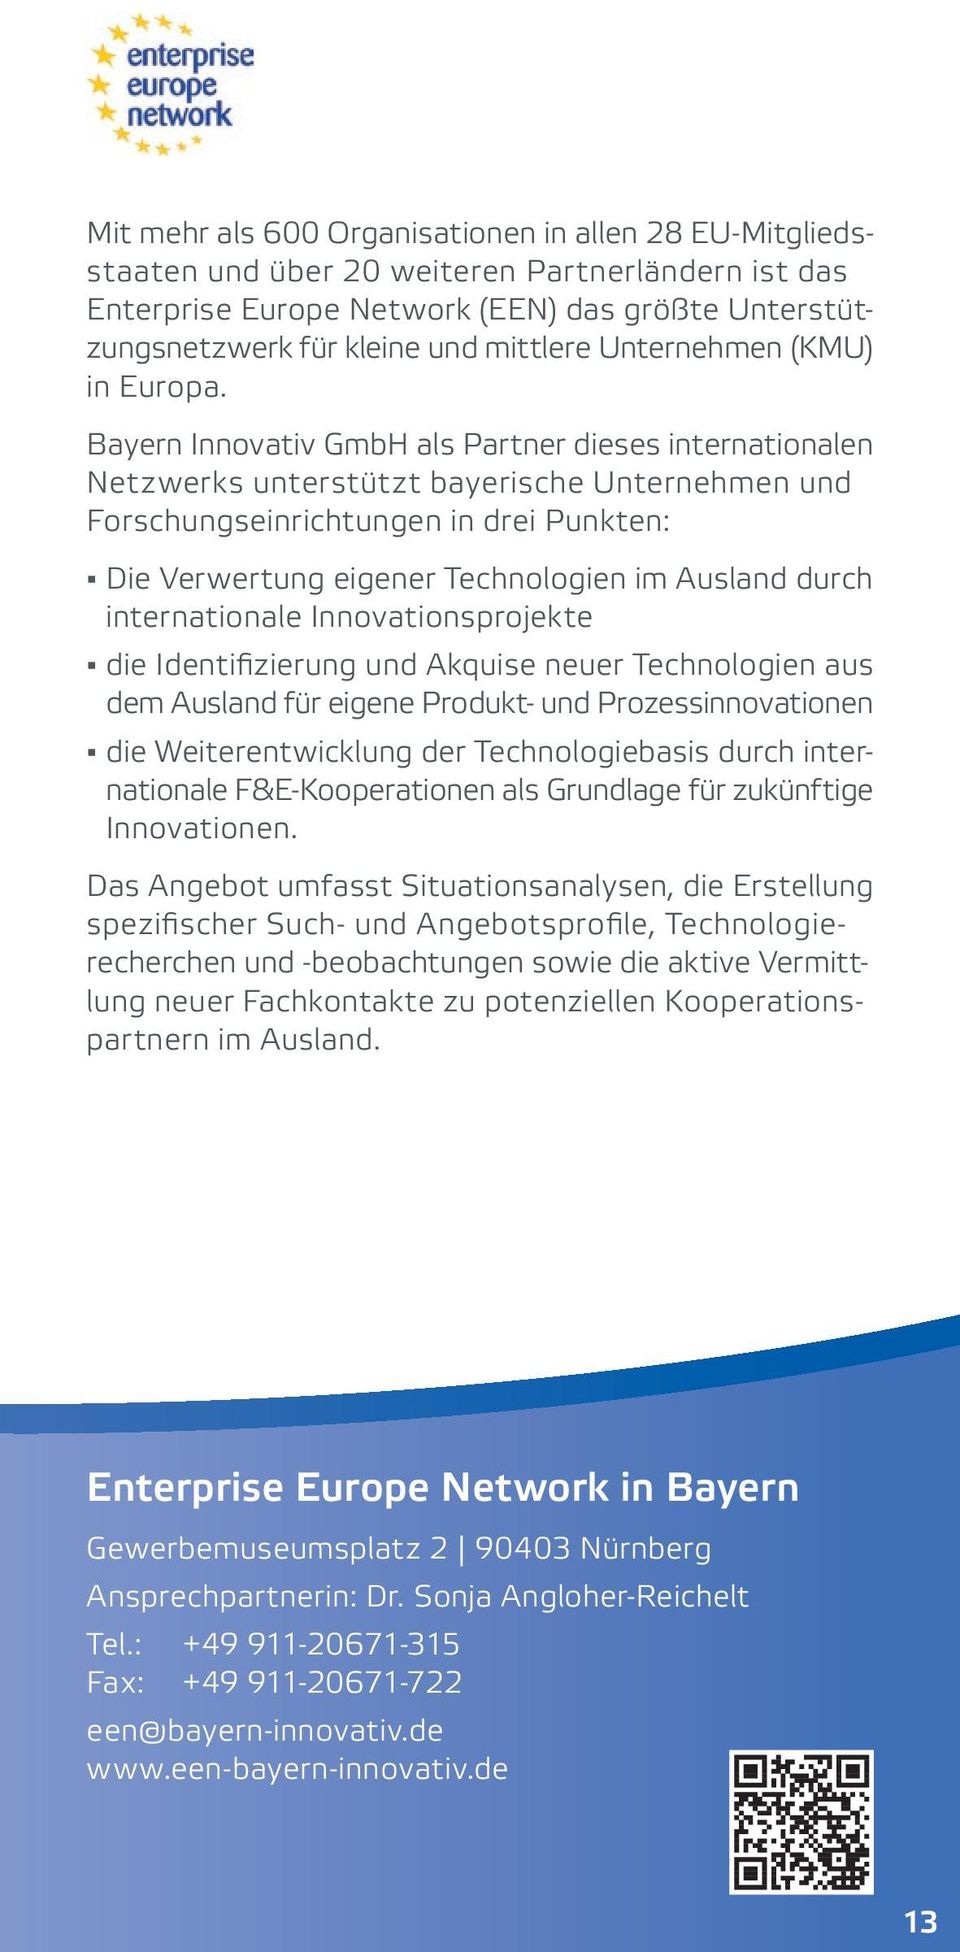 Bayern Innovativ GmbH als Partner dieses internationalen Netzwerks unterstützt bayerische Unternehmen und Forschungseinrichtungen in drei Punkten: Die Verwertung eigener Technologien im Ausland durch